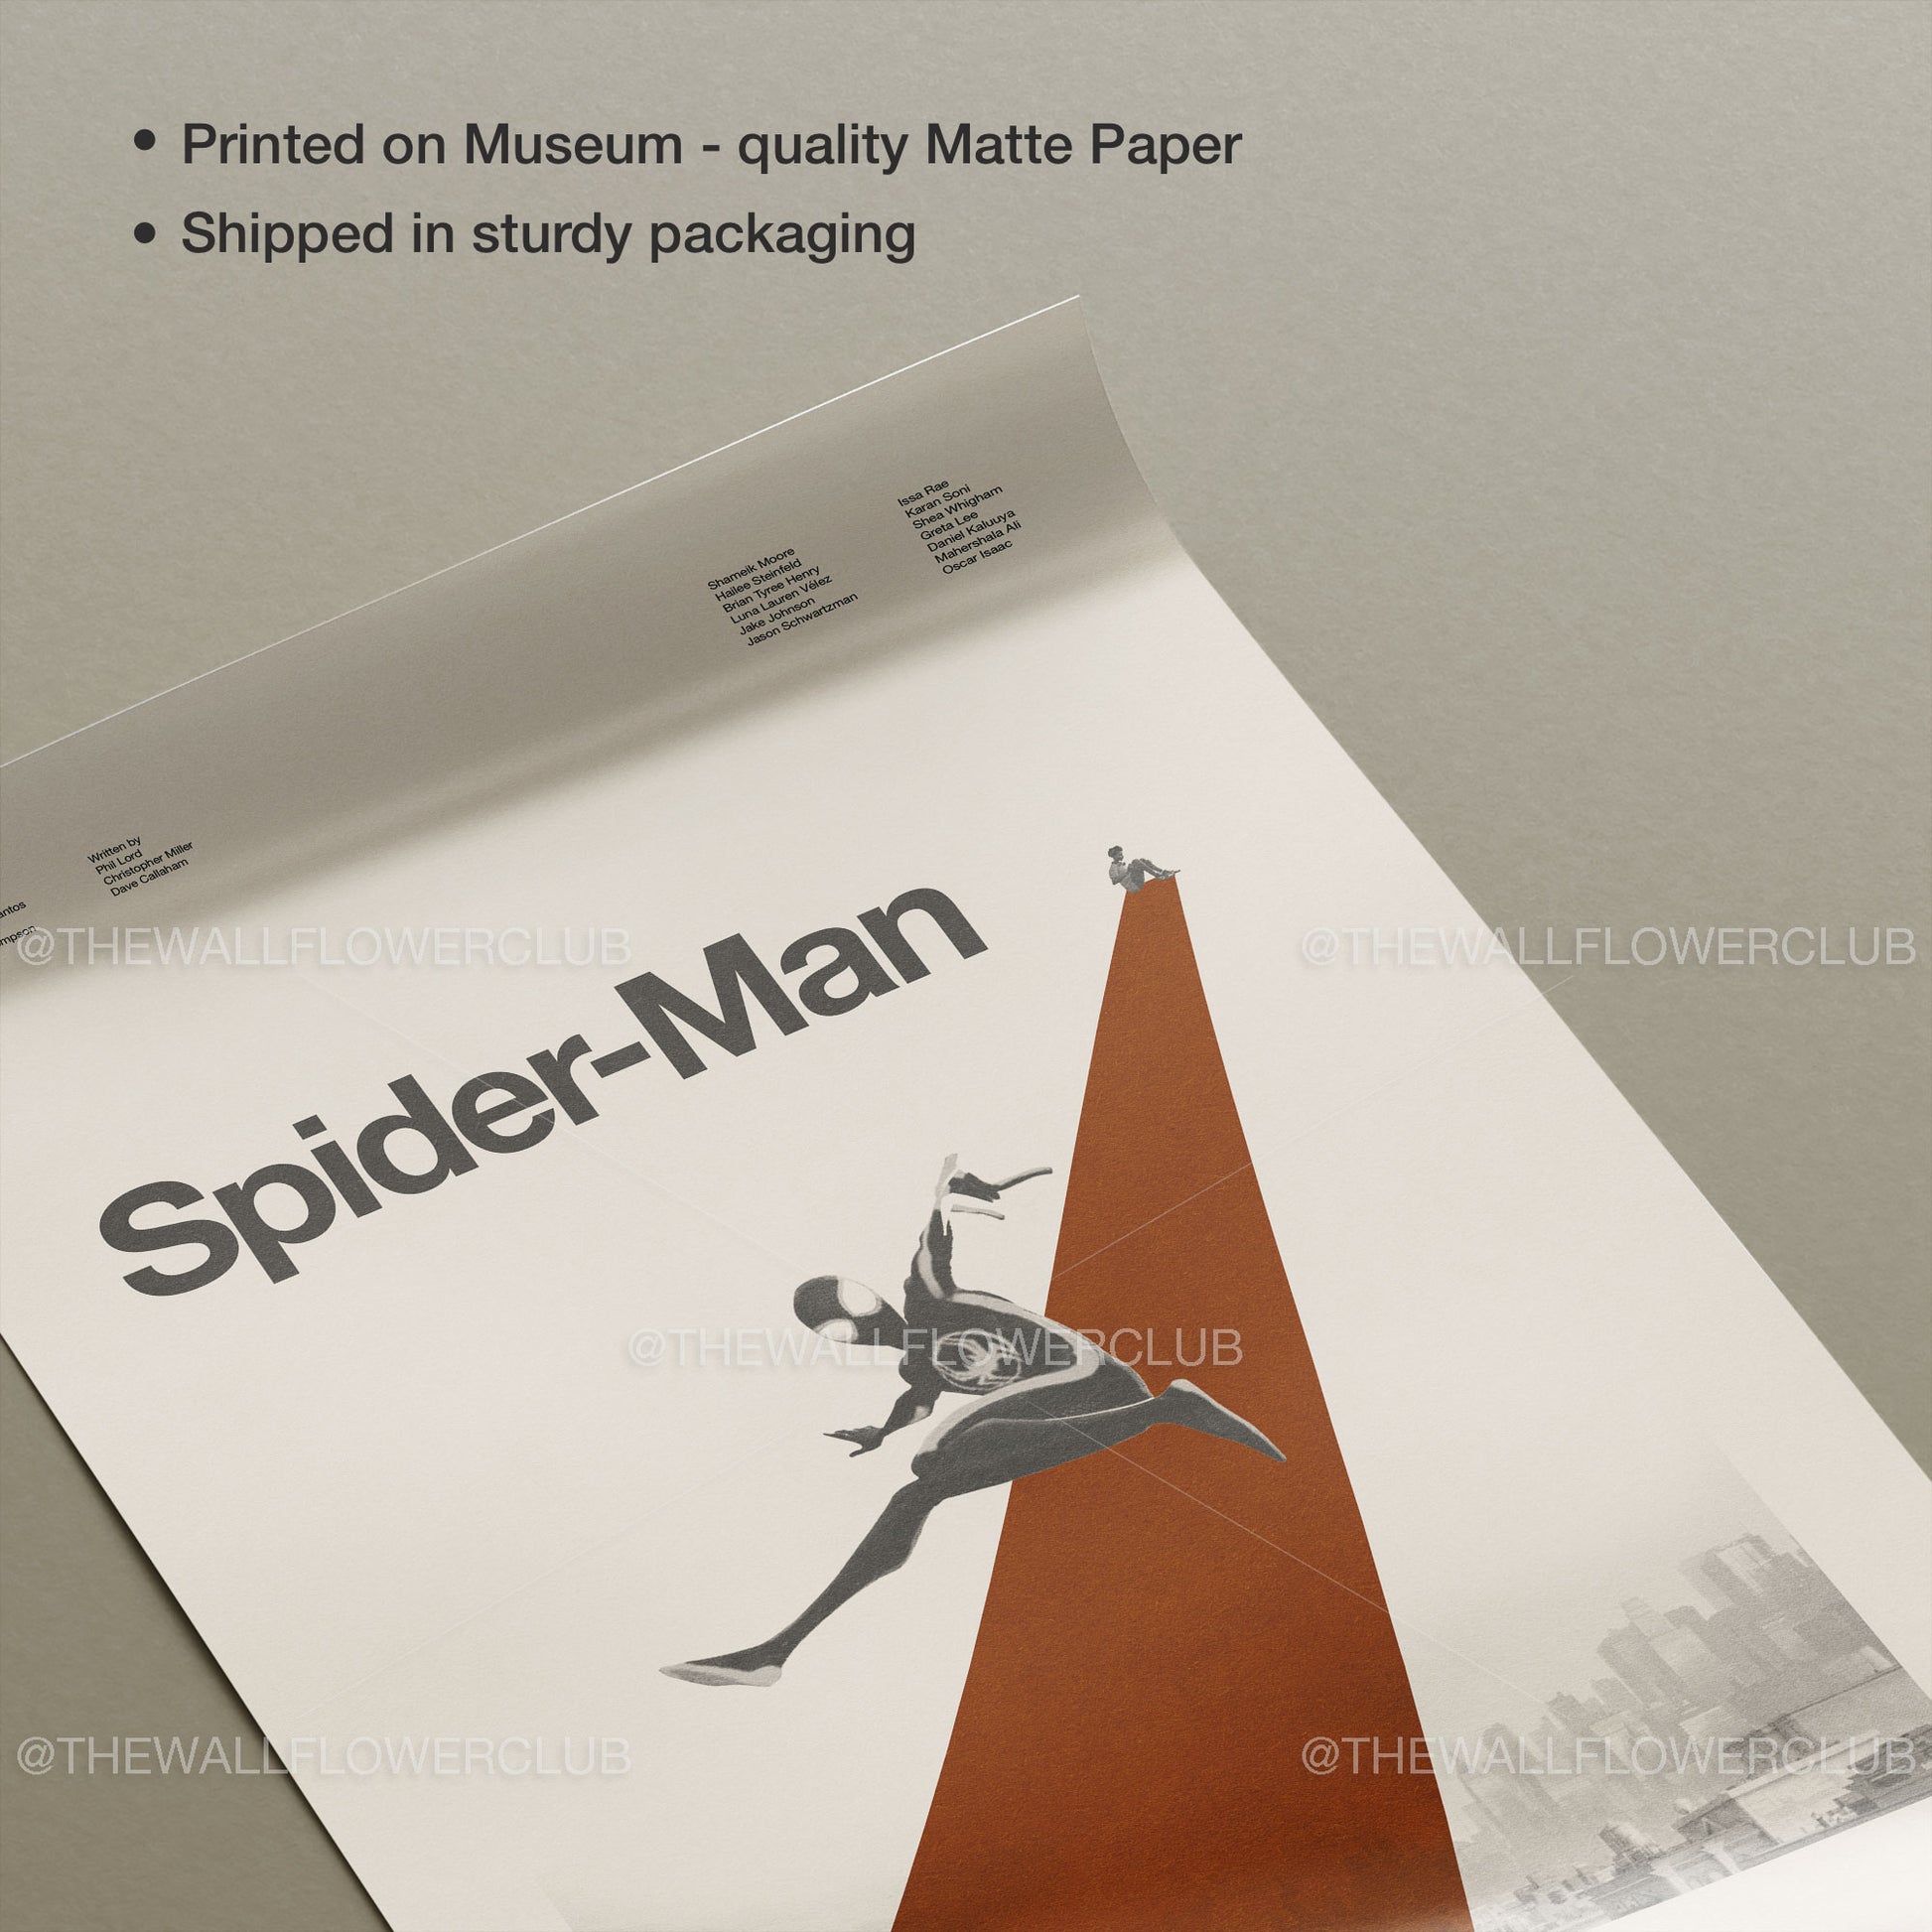 Mid century modern Spider-Man movie poster